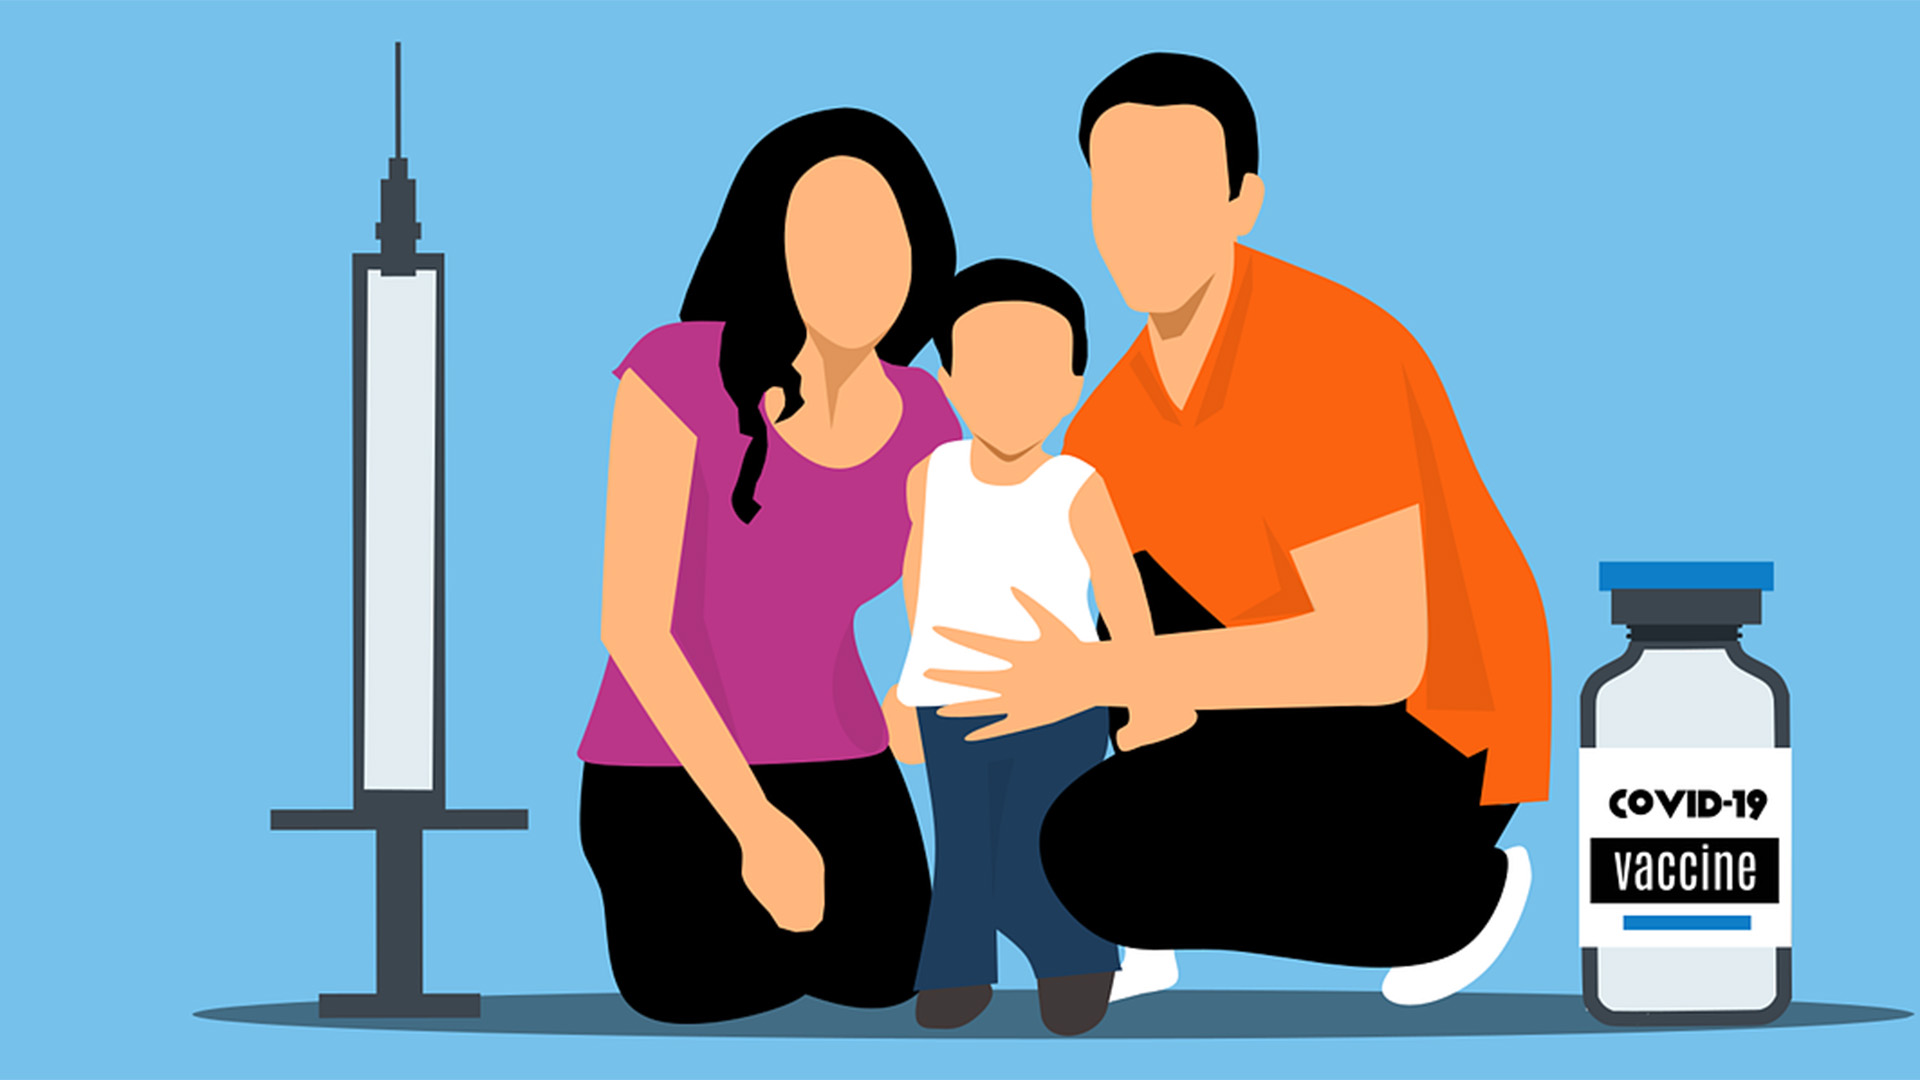 Illustration von Personen - Vater, Mutter, Kind -, daneben steht eine Covid-Vaccine-Impfampulle und eine Spritze.